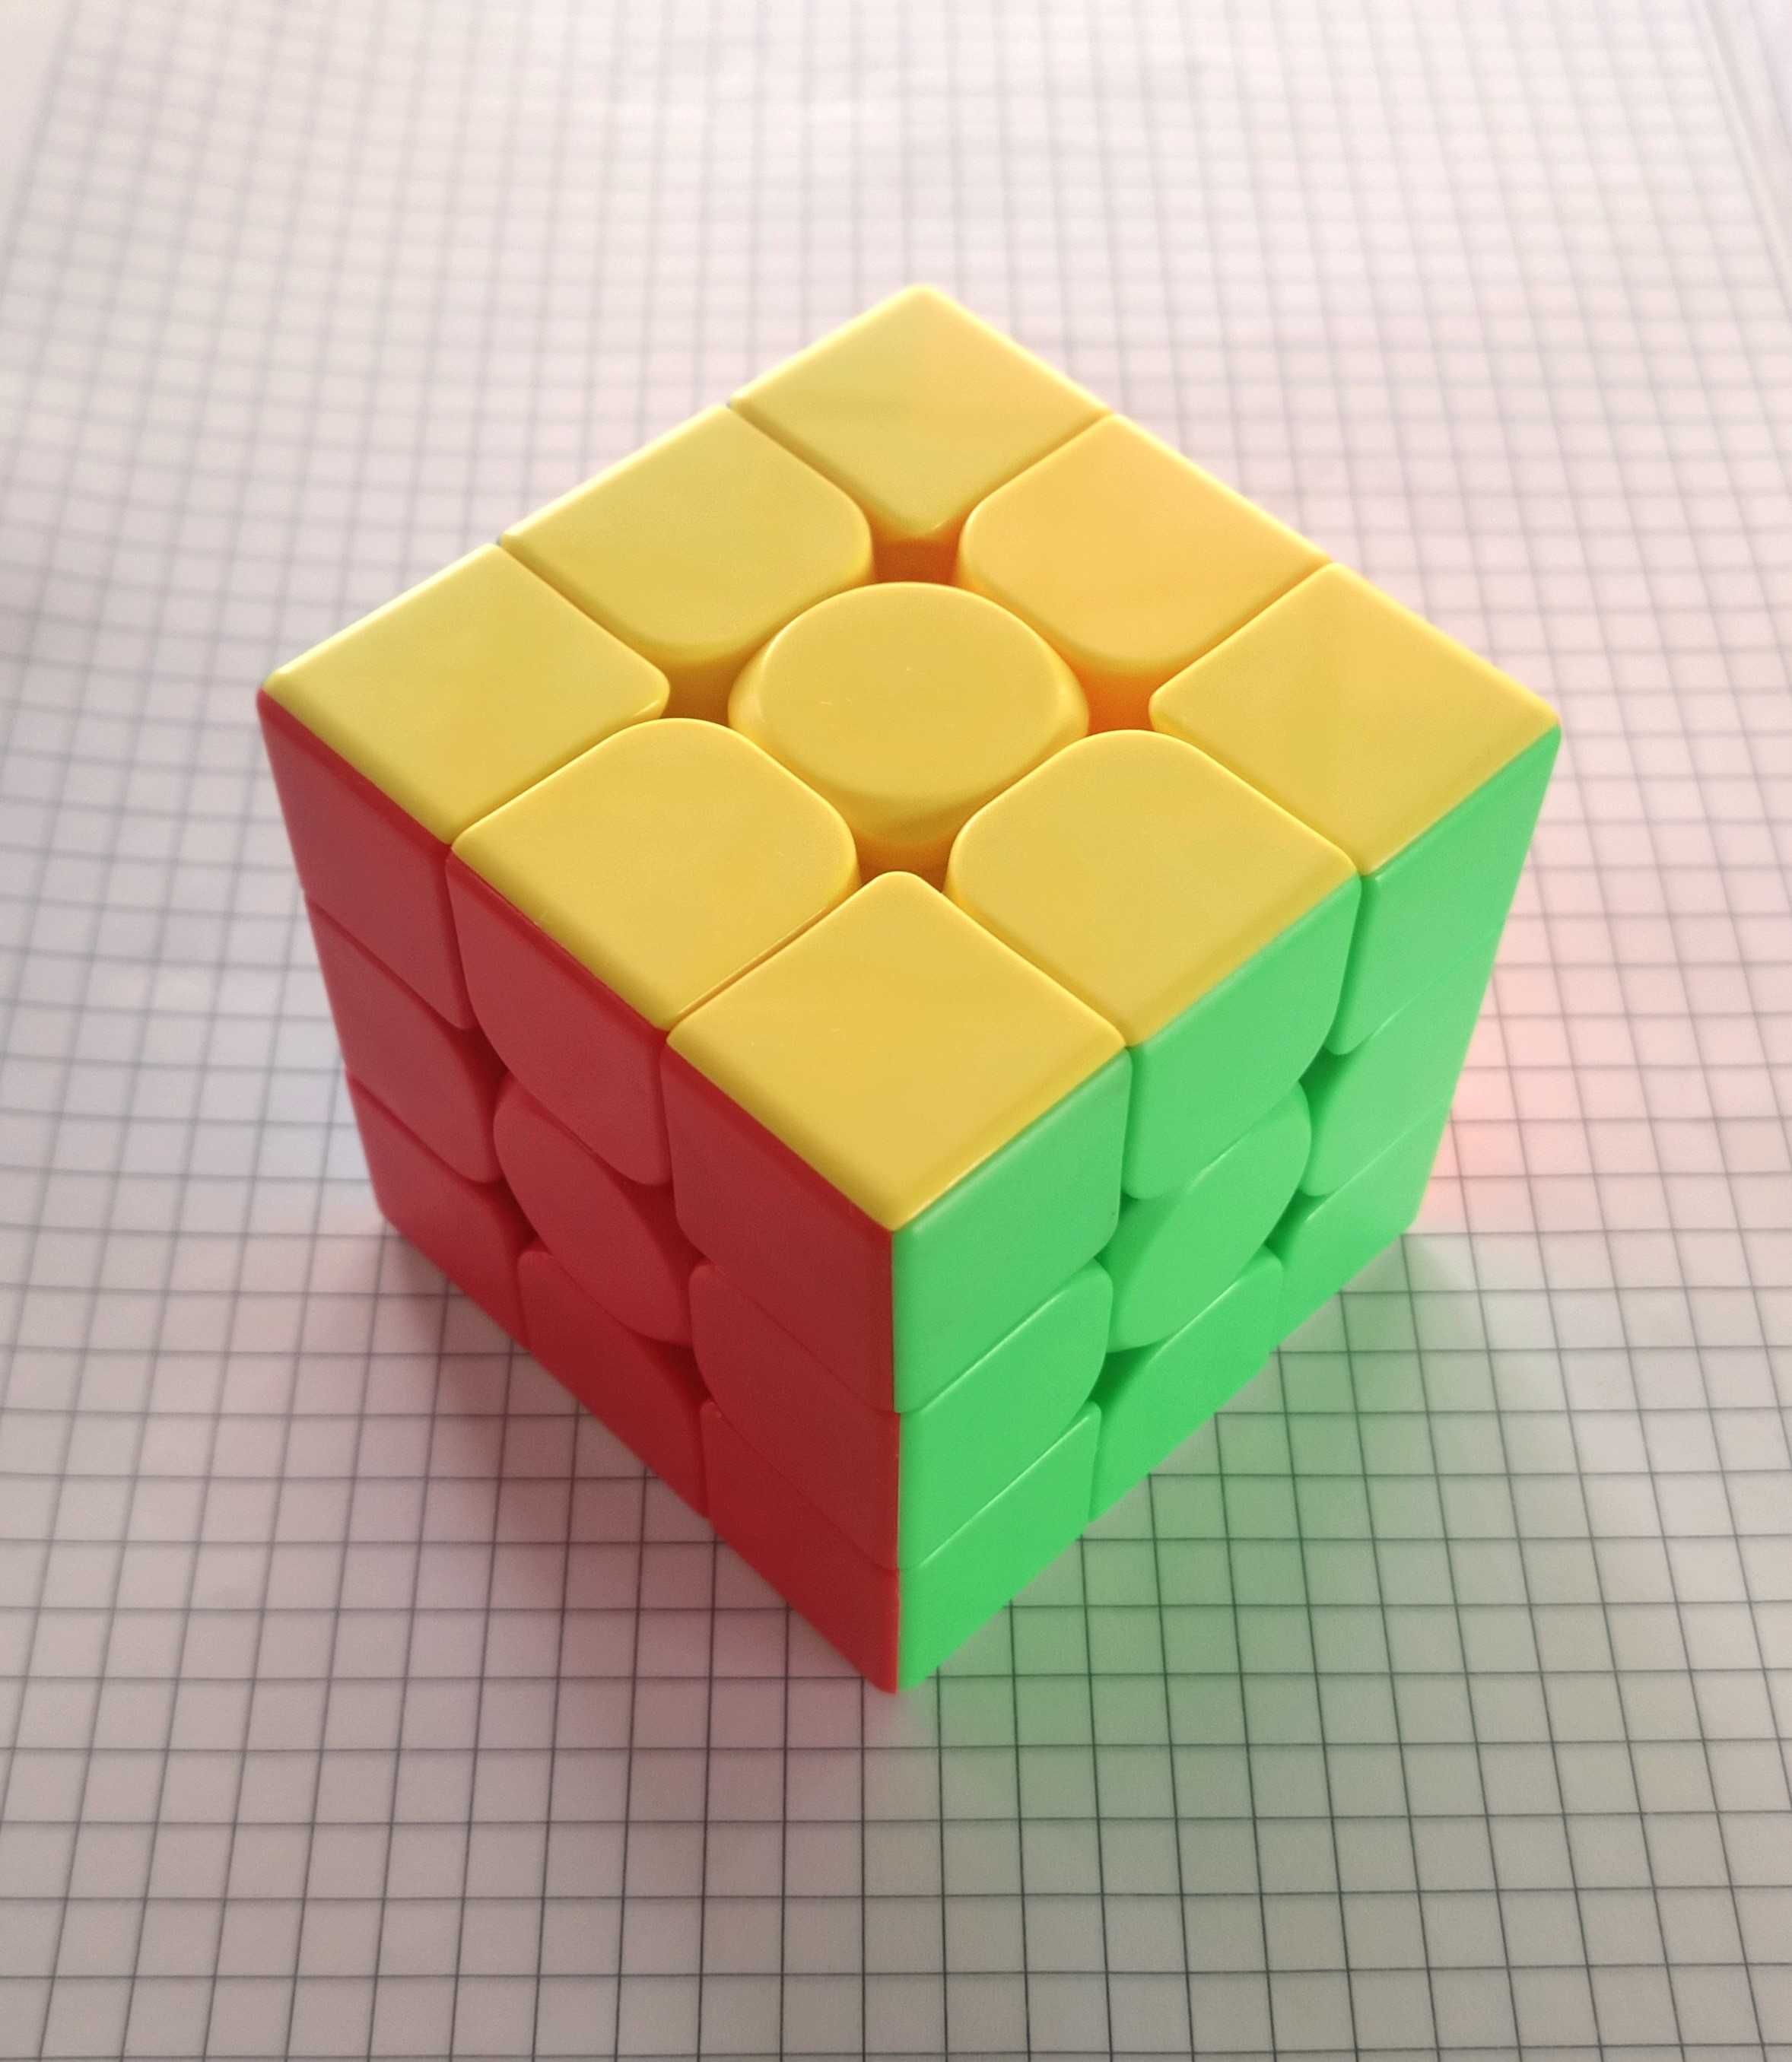 Kostka Rubika 3x3x3 NOWA